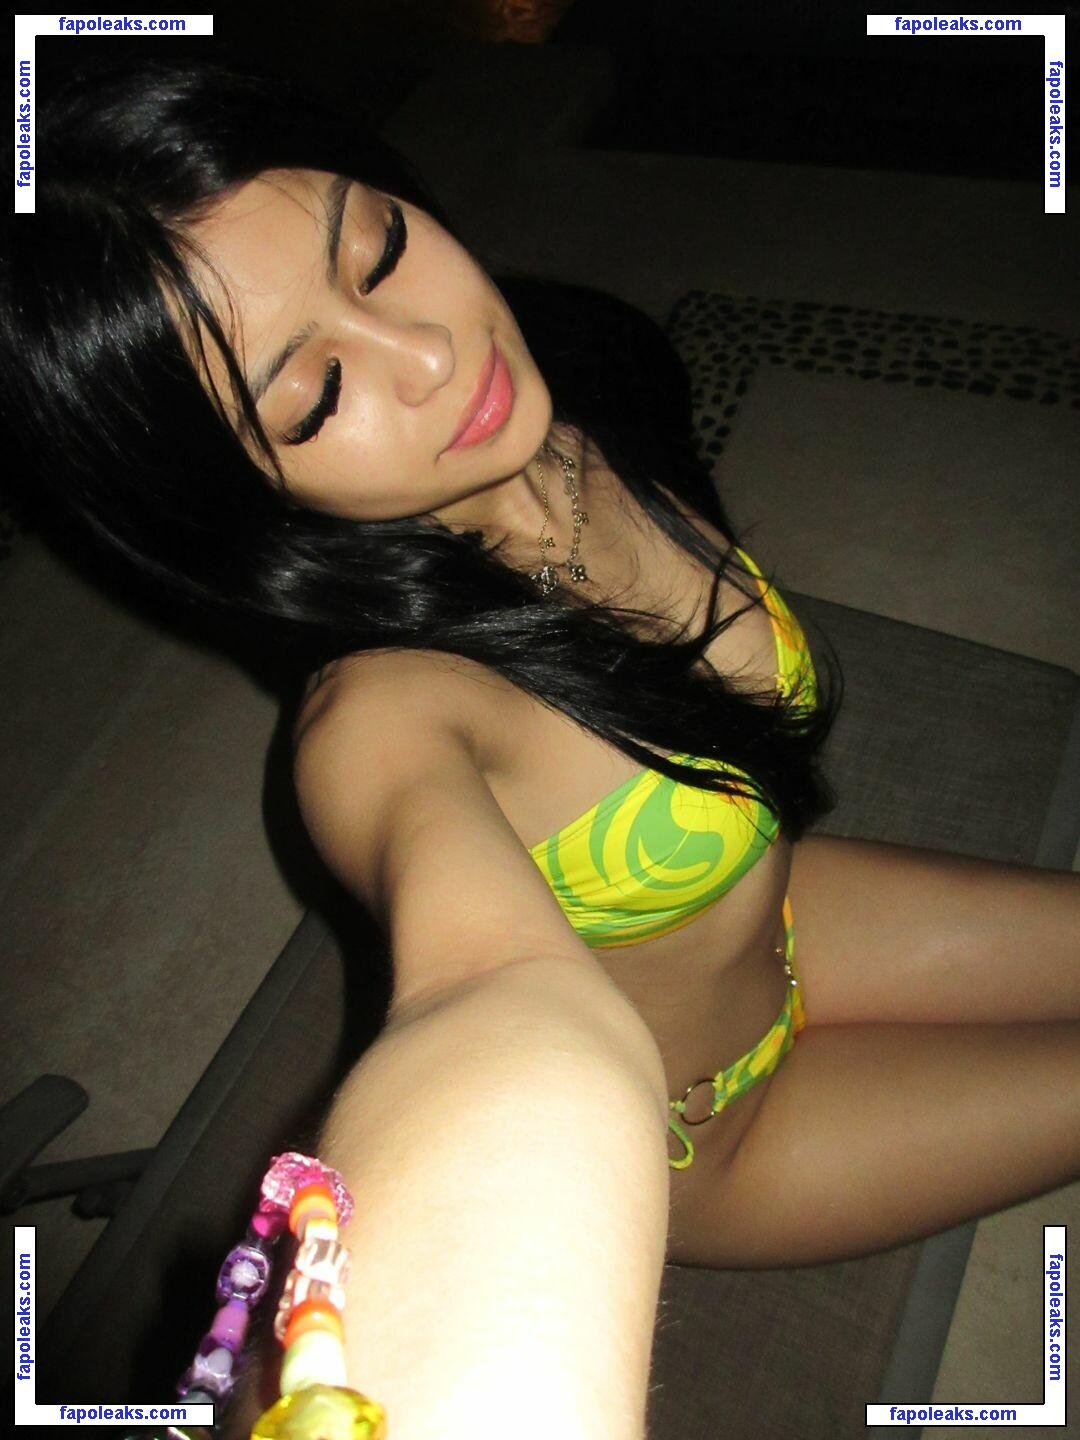 Desiree Montoya / desireemontoya nude photo #0061 from OnlyFans